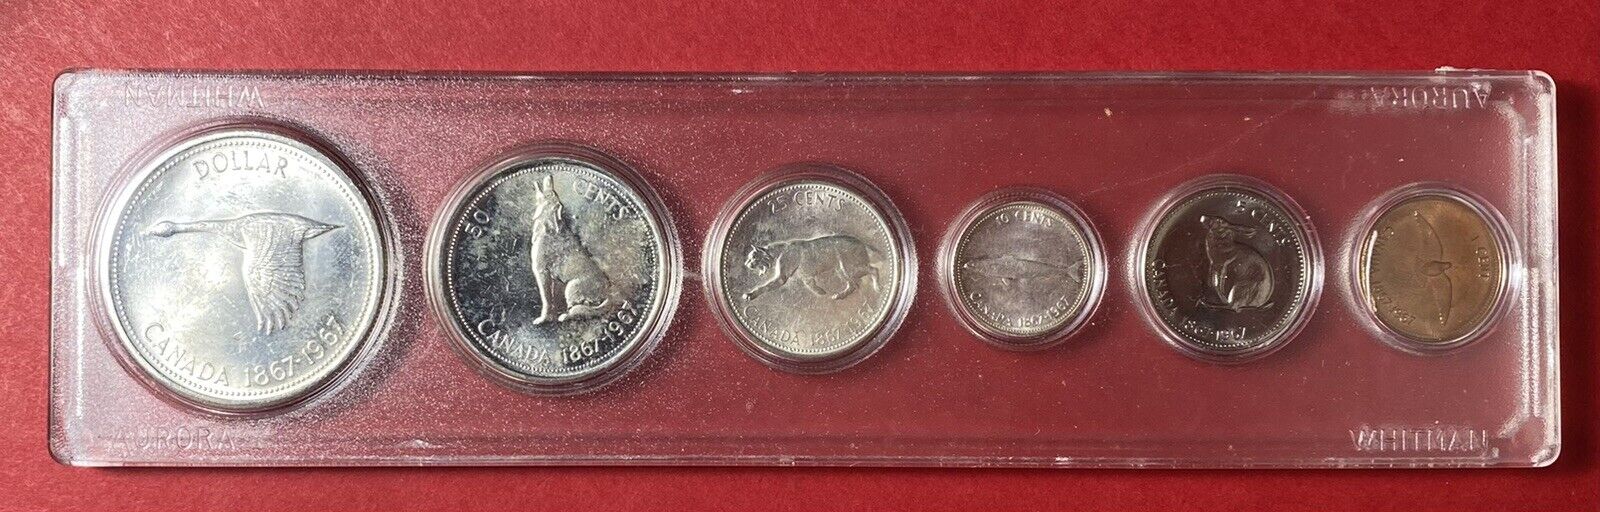 1967 Canada Coin Set #2